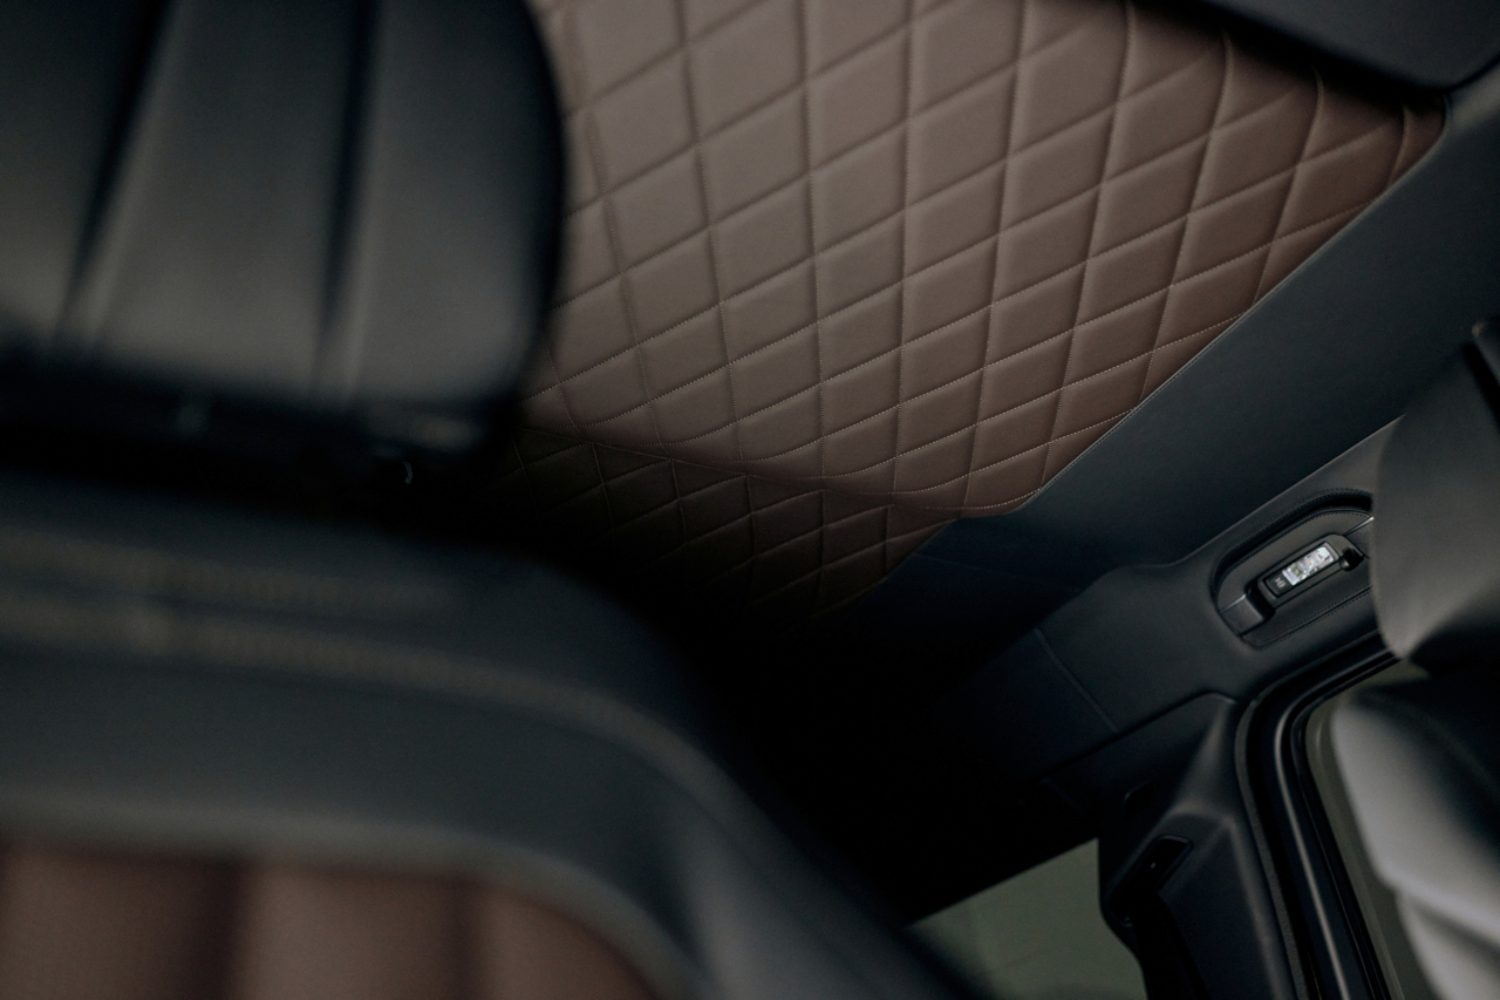 O Mercedes-Benz G 500 V8 'Final Edition' eleva a patamar do luxo, também no habitáculo